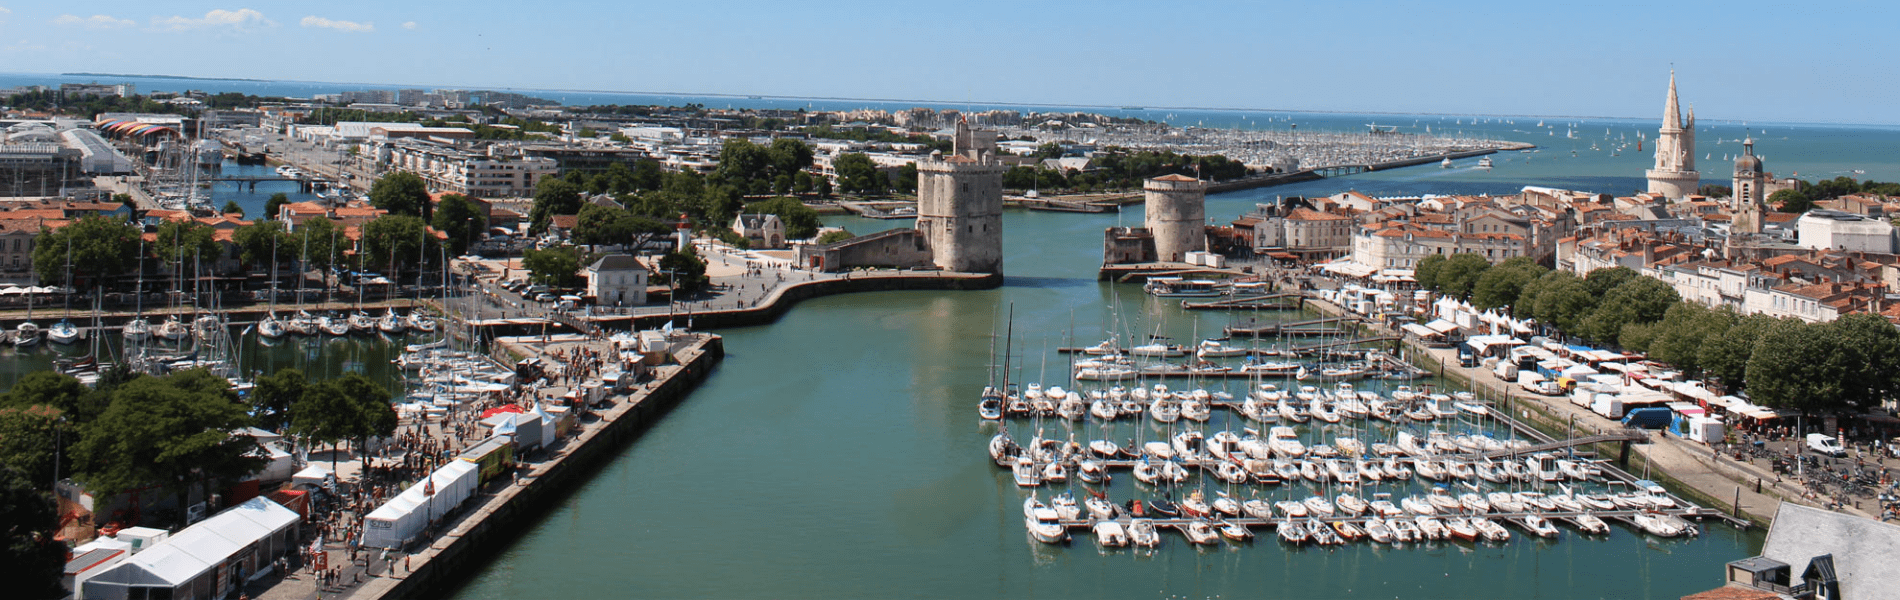 Vieux Port -La Rochelle